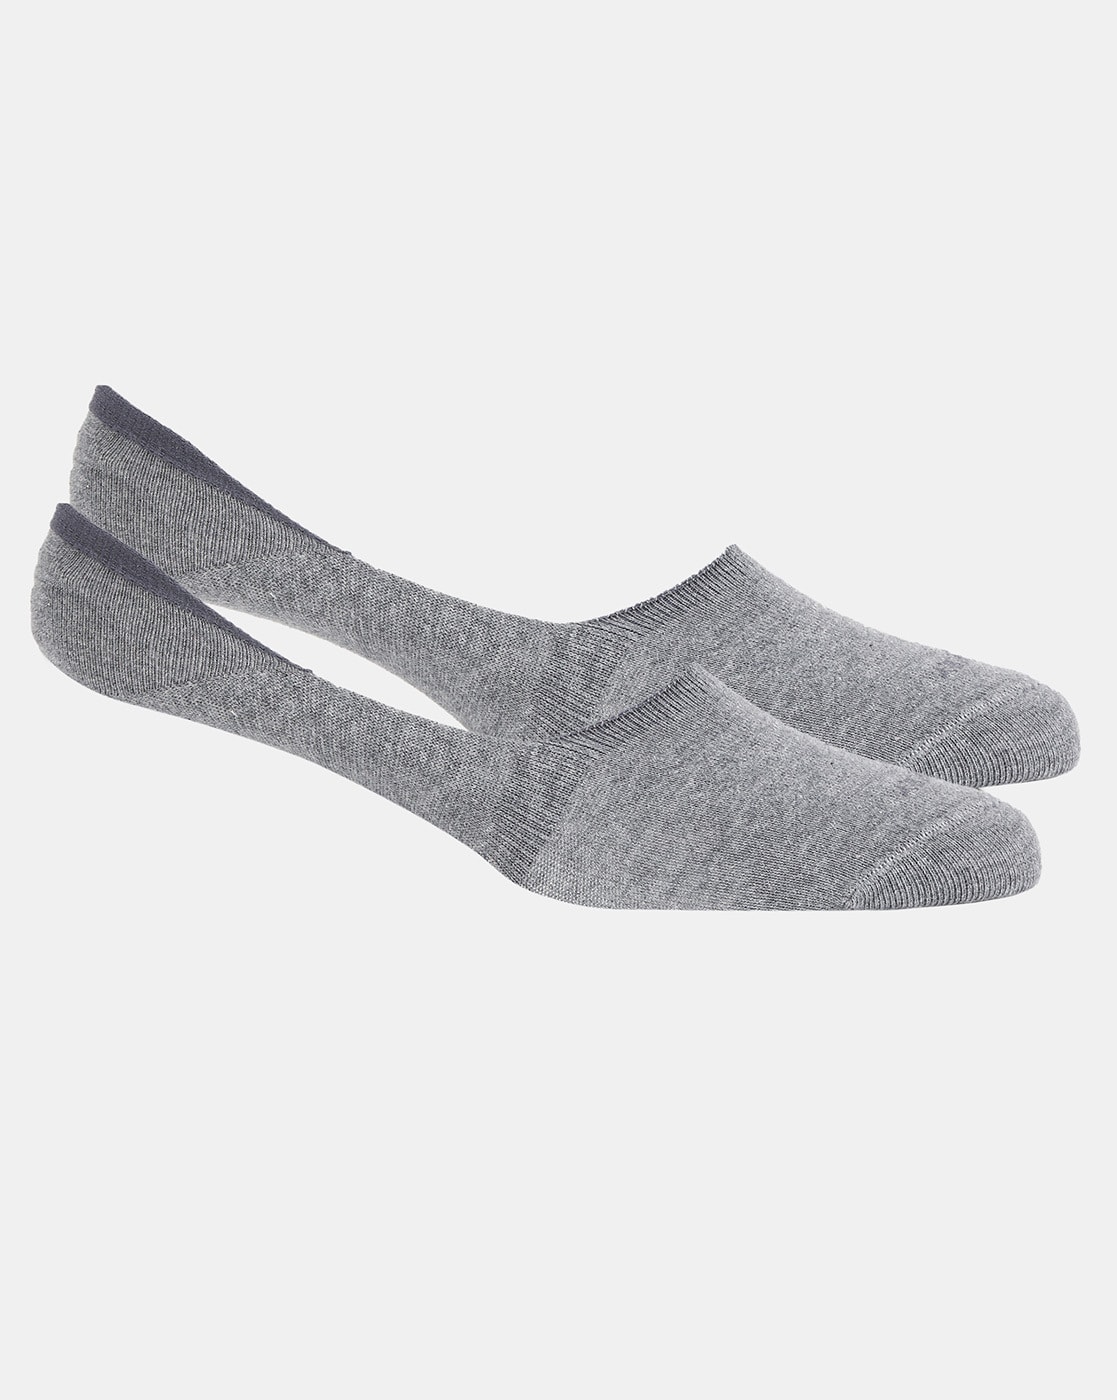 Buy Grey Dance Socks Online In India -  India